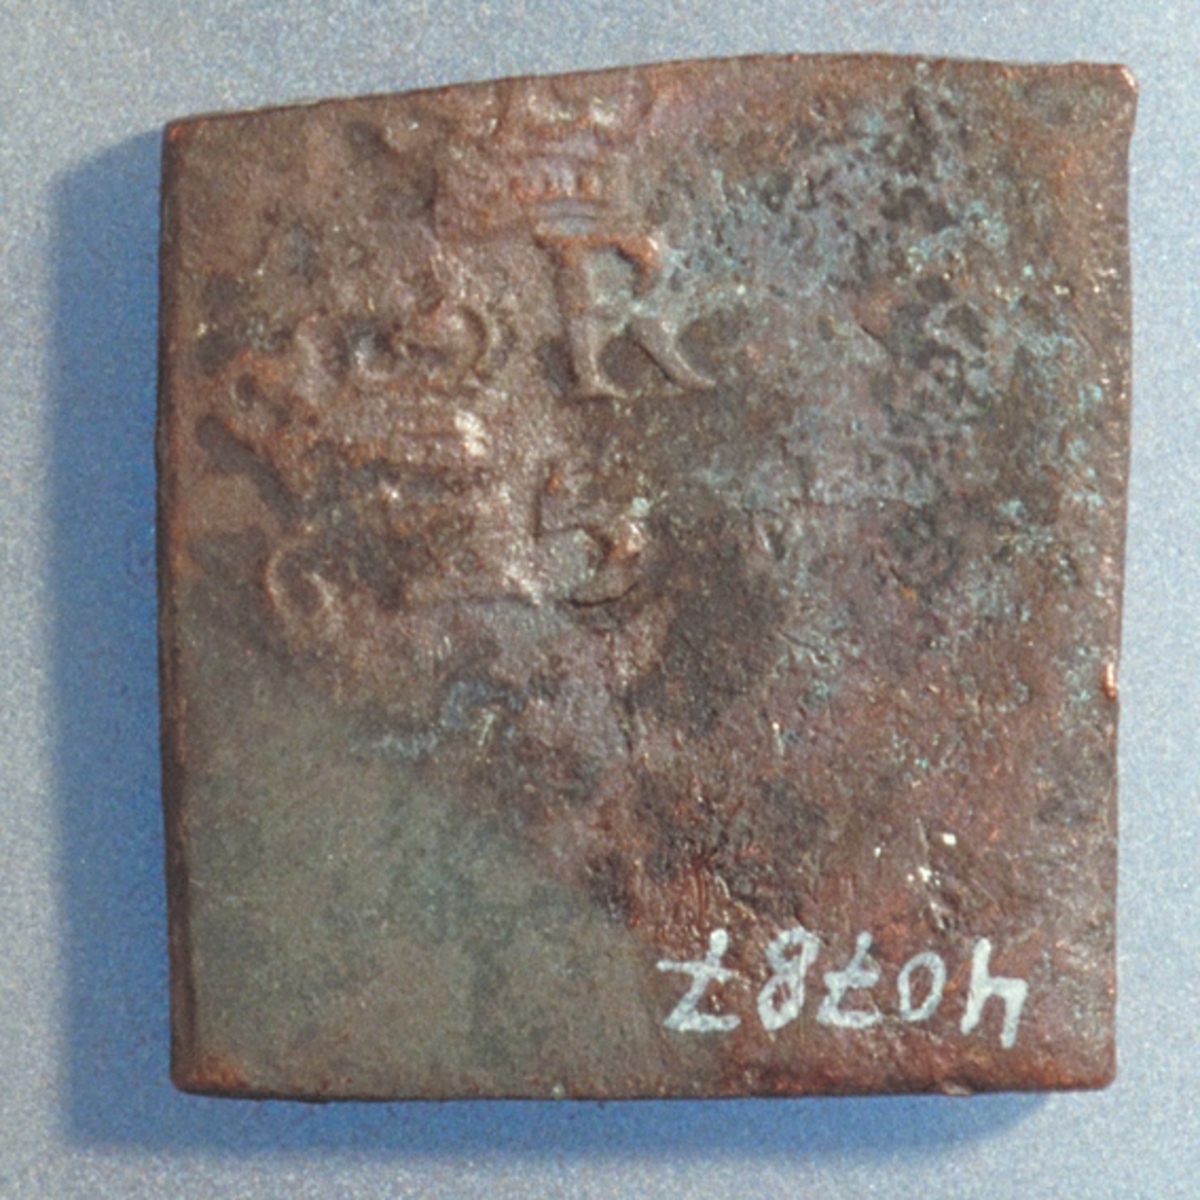 1- öre
Fyrkantigt mynt.
Bägge sidor slitna och korroderade.
Vikt: 23,4 gram.